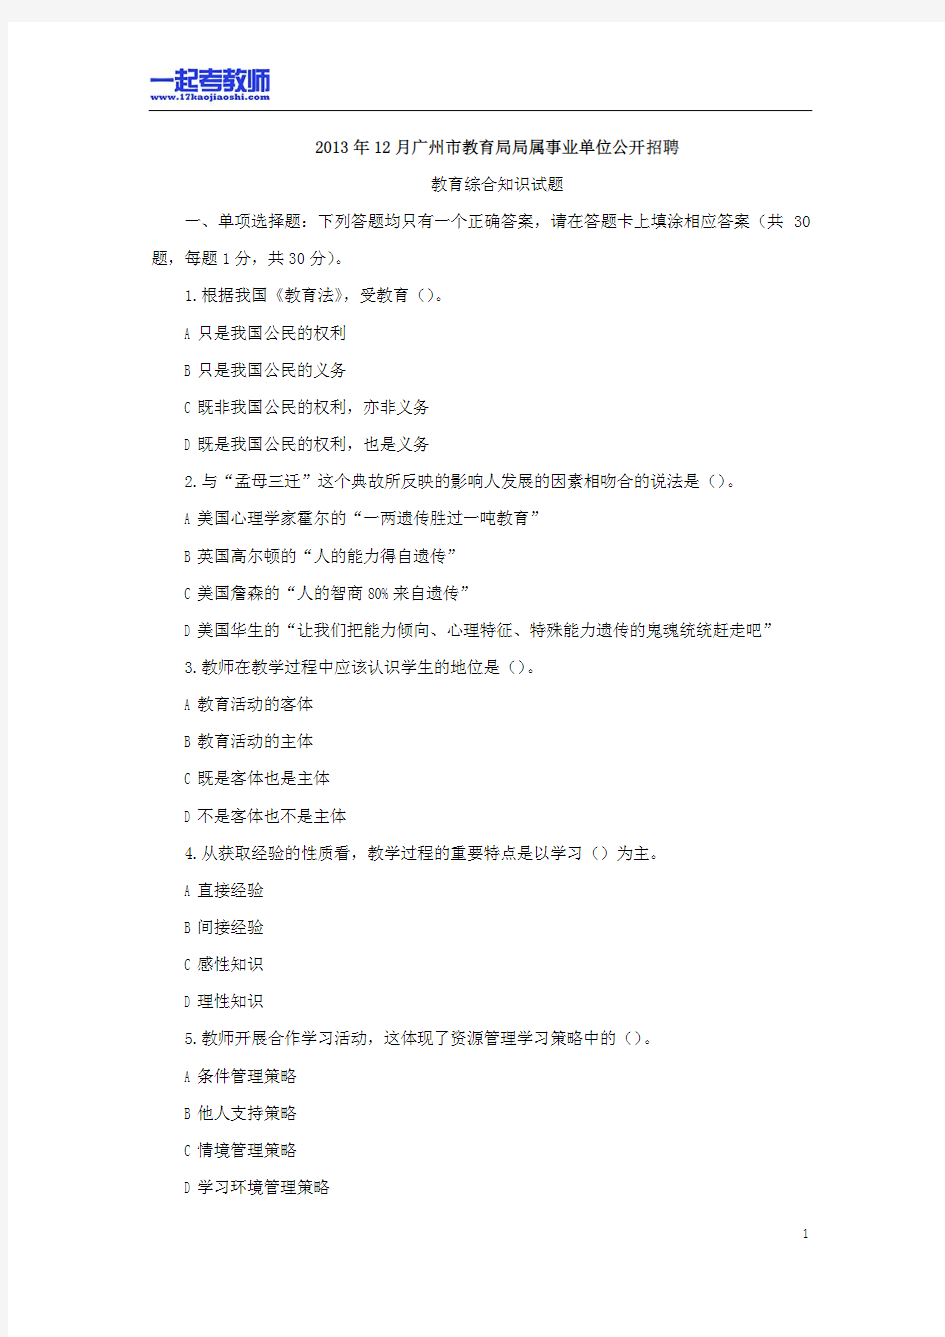 2013年广州市市属教师招聘考试笔试教育综合真题答案解析